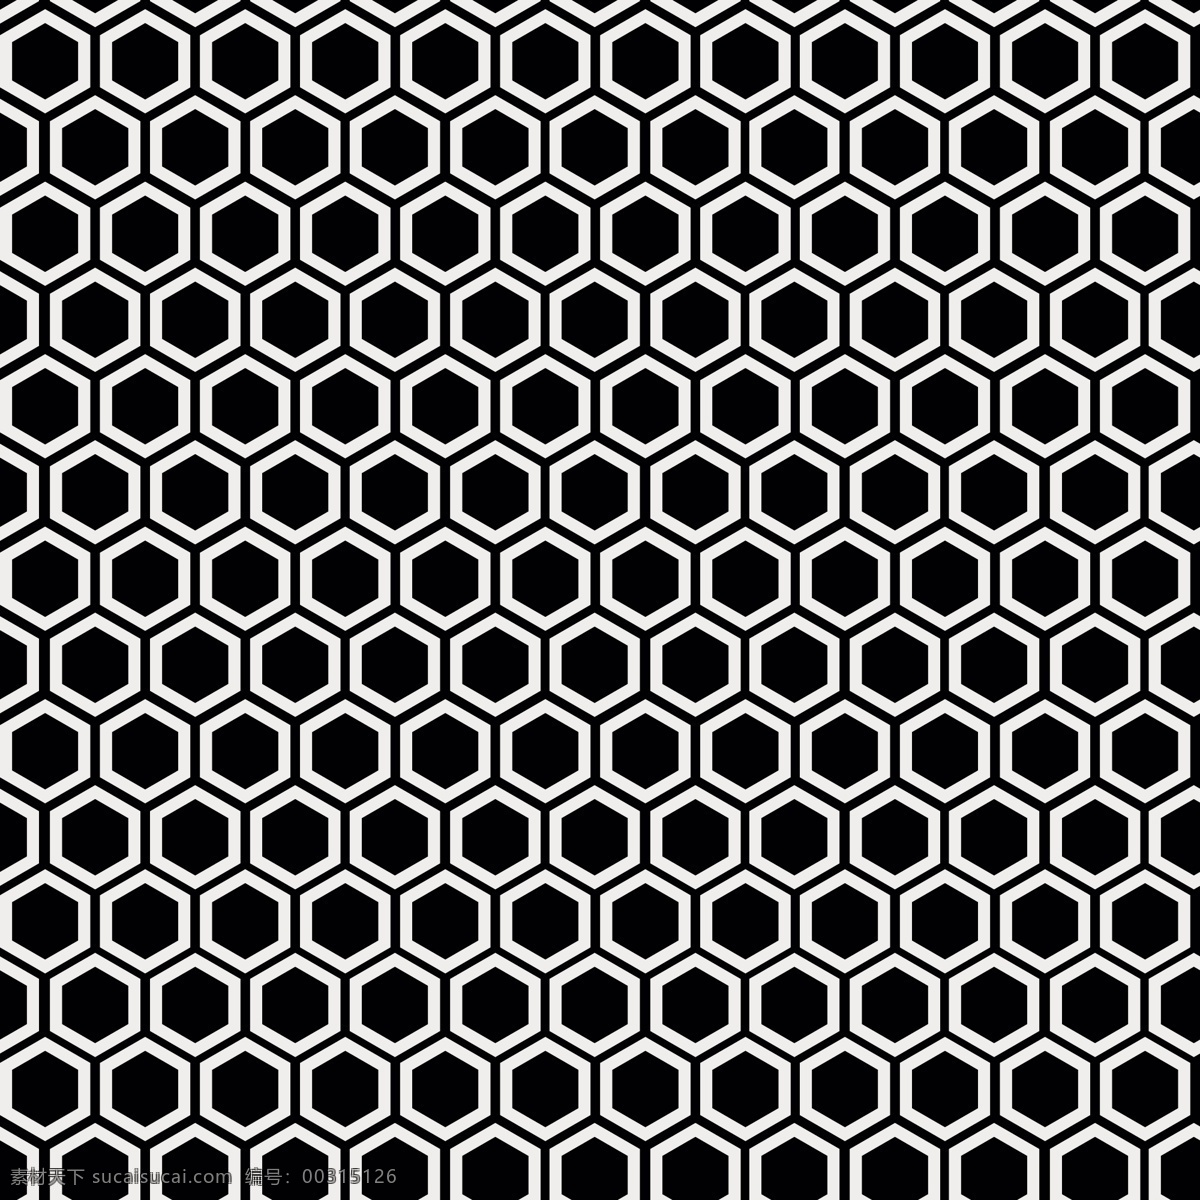 单色 蜂巢 模式 背景 图案 抽象背景 抽象 几何 黑色背景 黑色 六角 几何背景 几何图形 多边形 镶嵌 白色 黑白 无缝拼接 无缝 图案背景 抽象图案